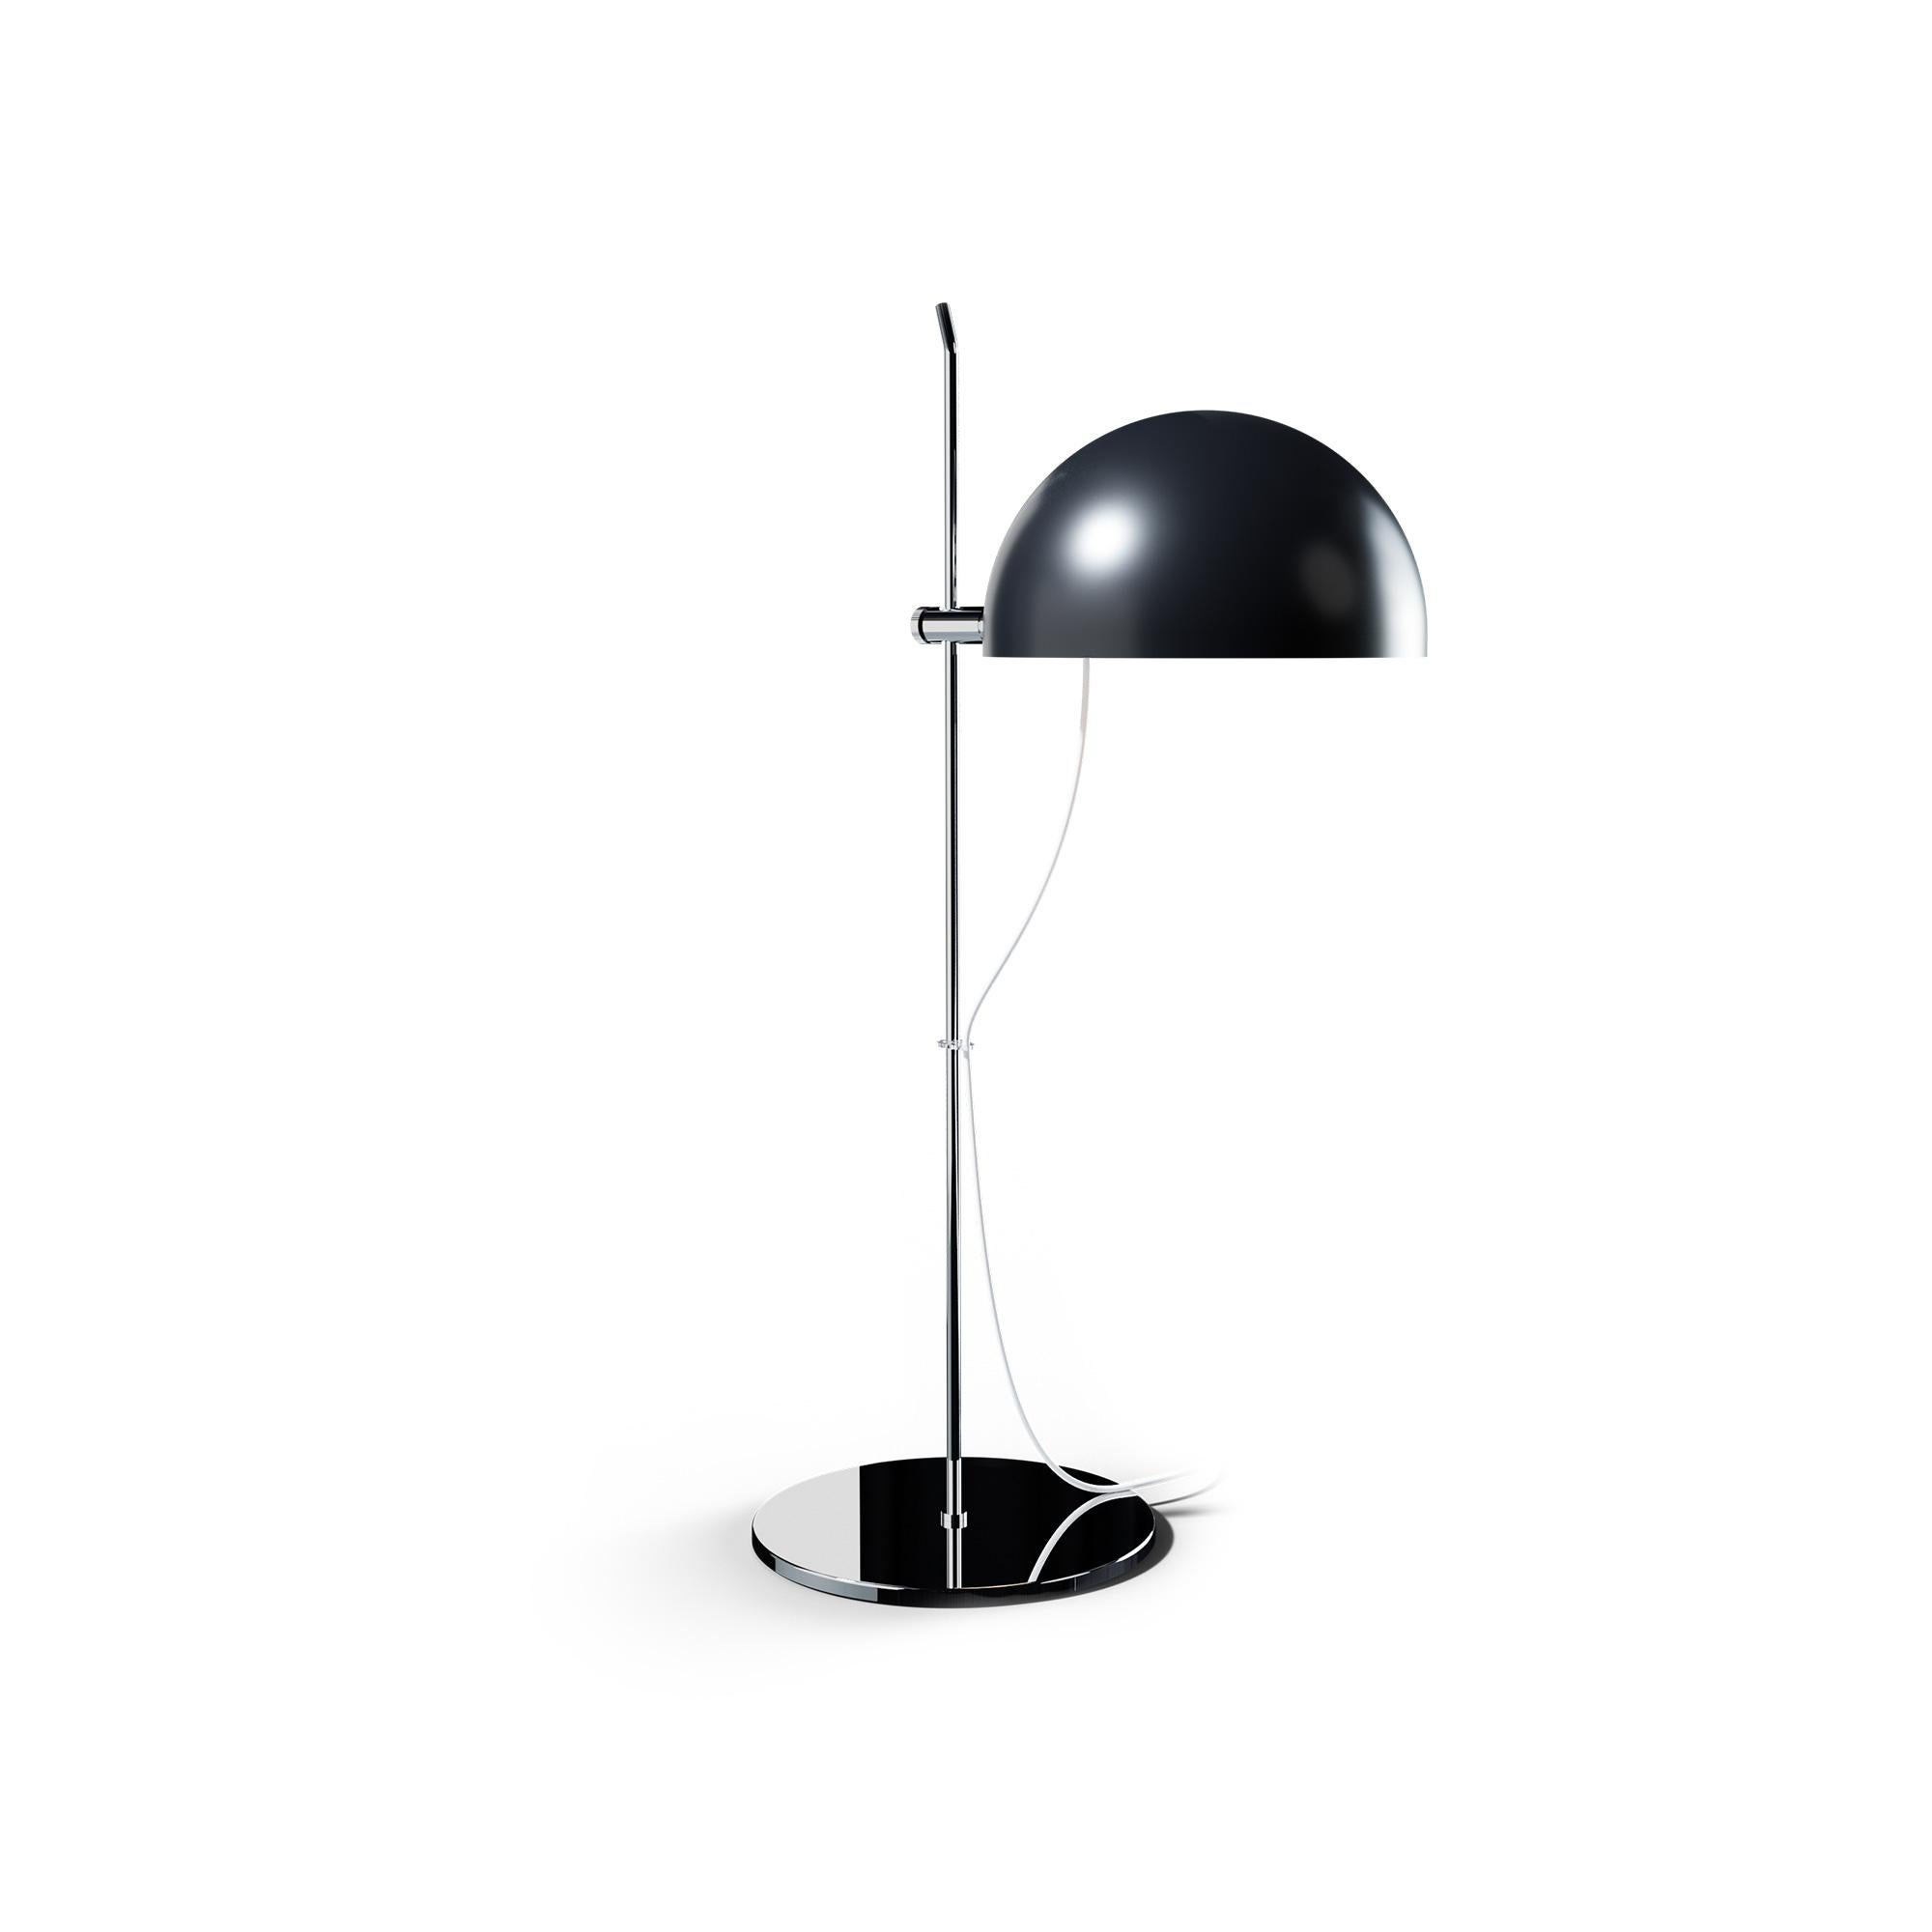 Alain Richard 'A21' Desk Lamp in Chrome for Disderot For Sale 3